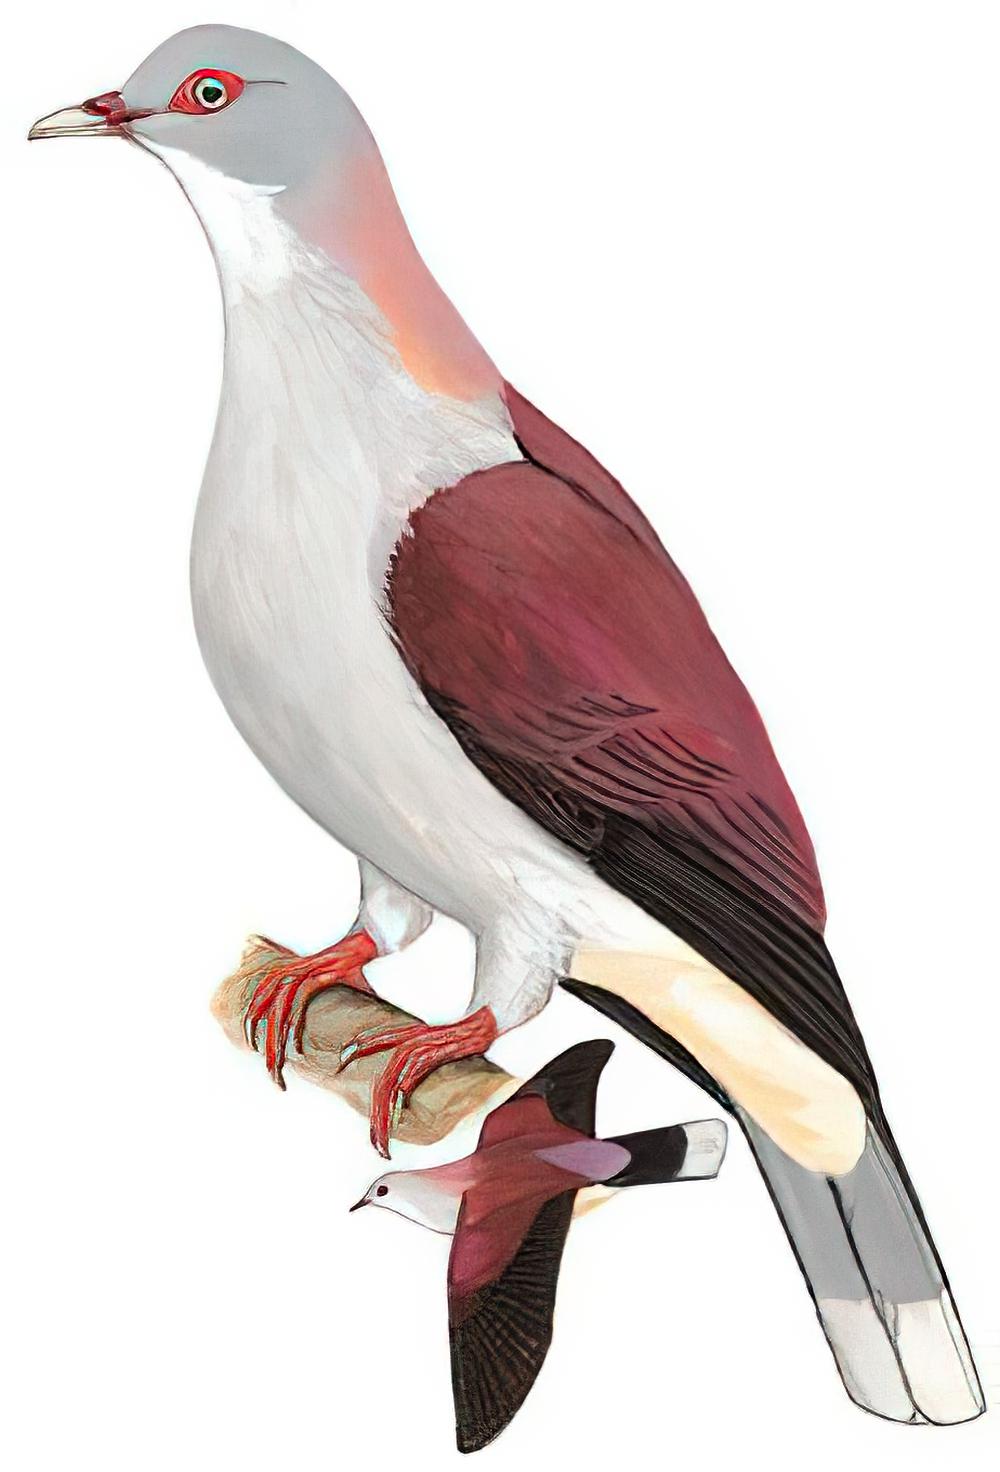 山皇鸠 / Mountain Imperial Pigeon / Ducula badia